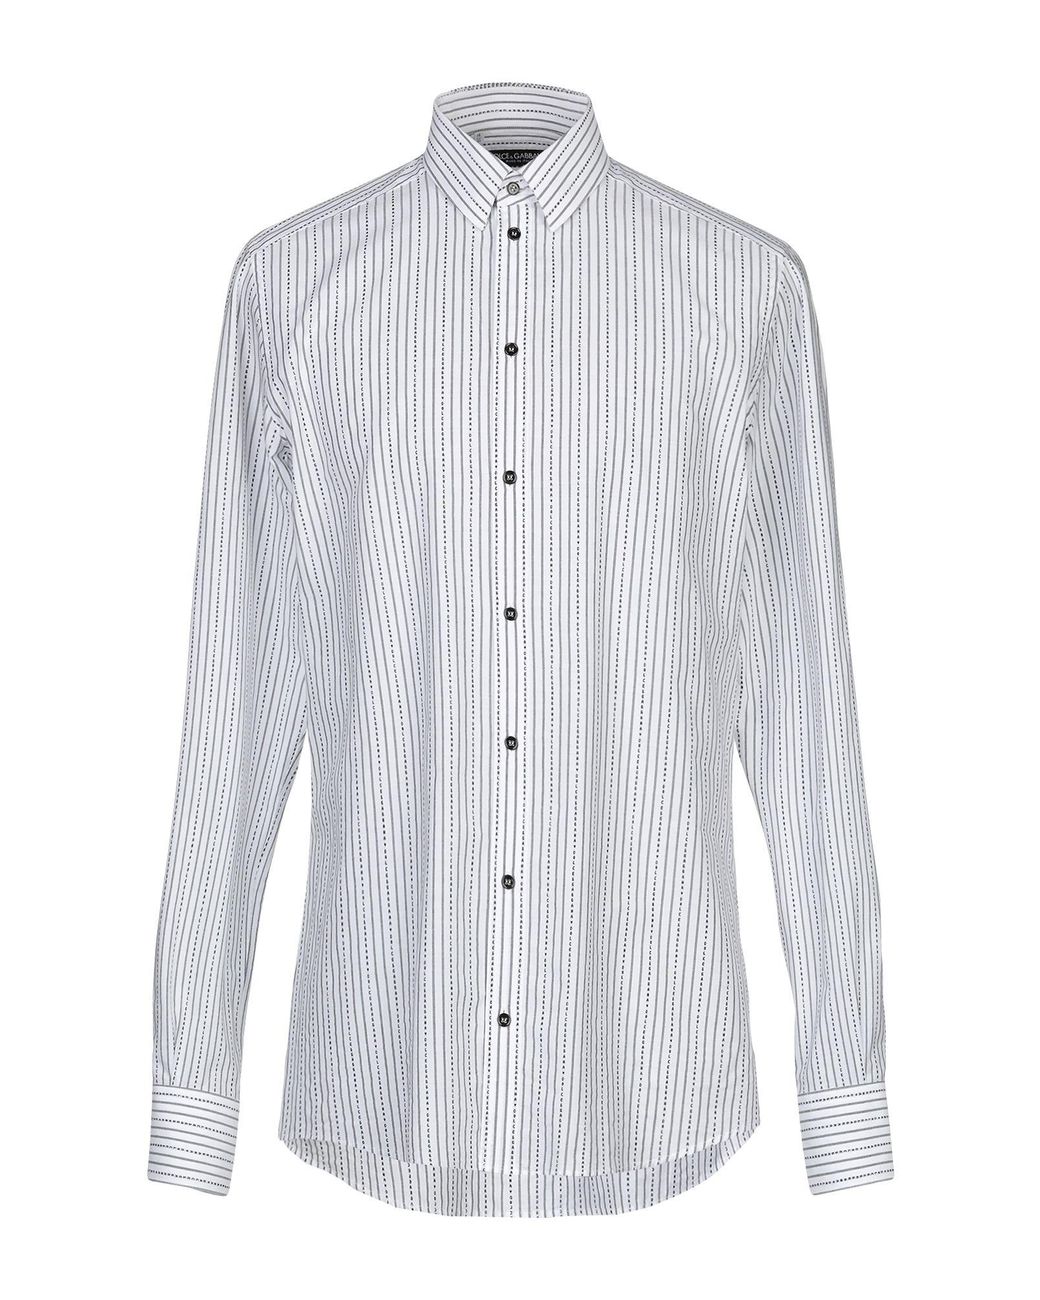 Dolce & Gabbana Shirt in White for Men - Lyst